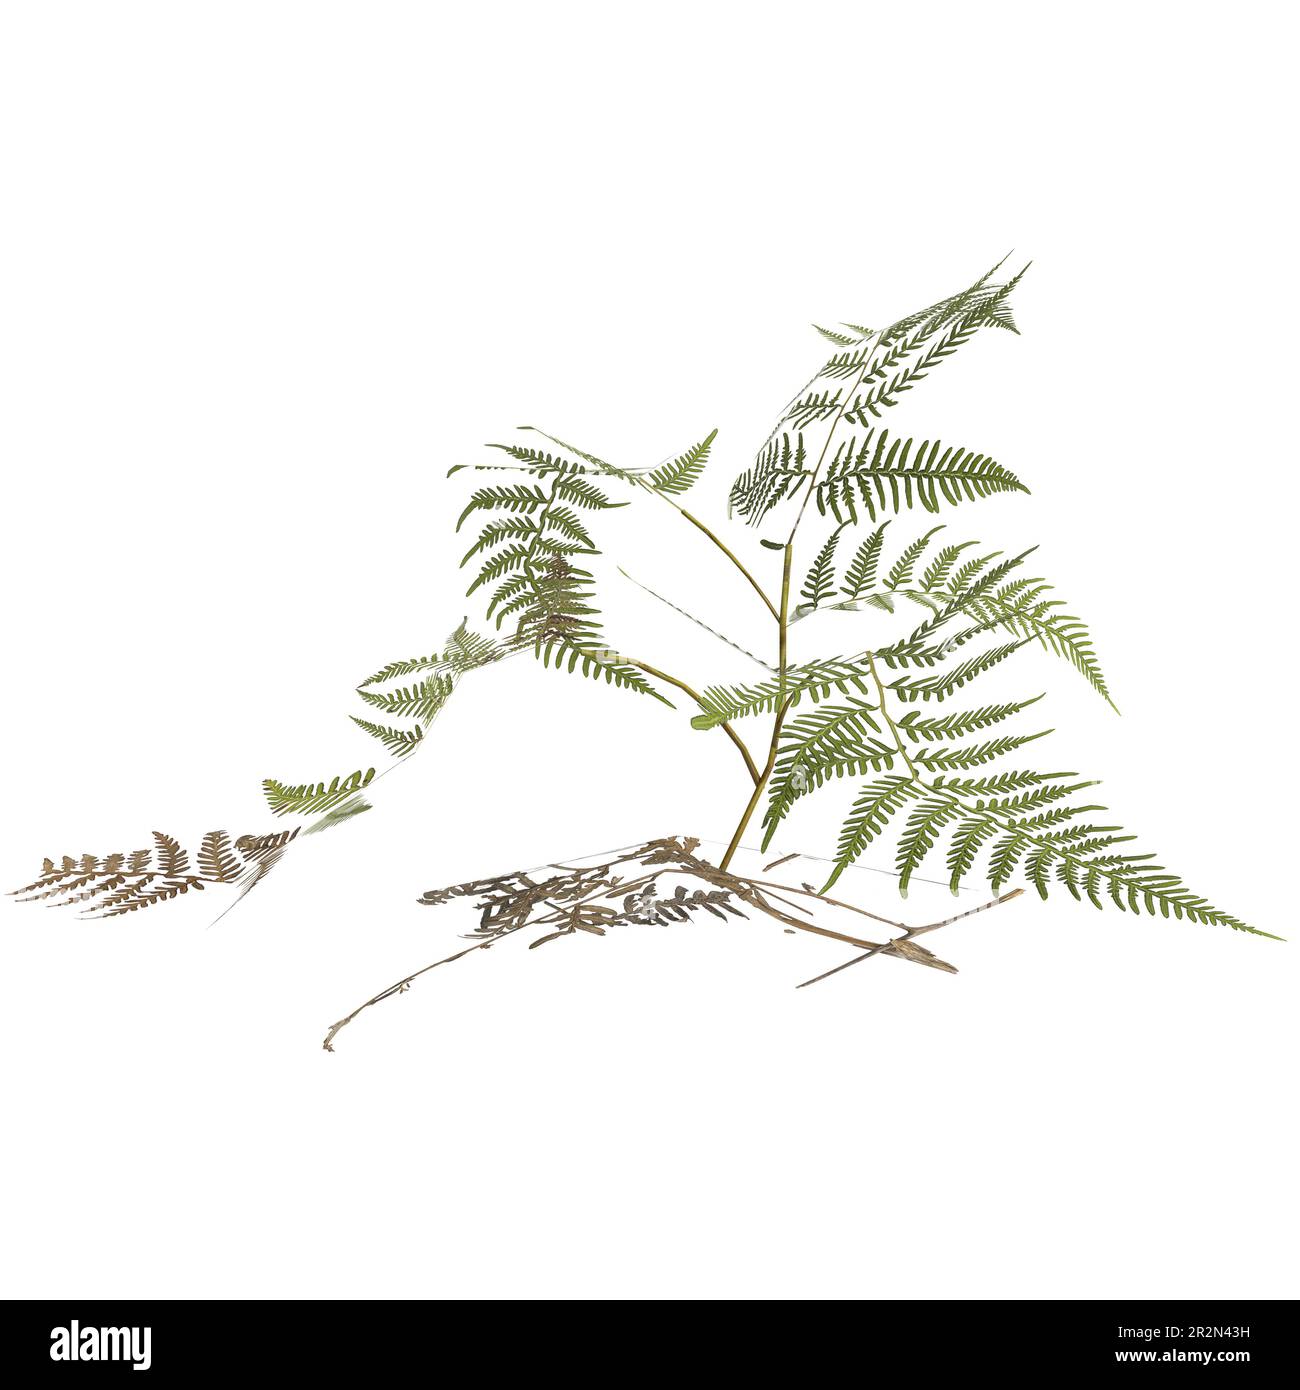 3d illustration of pteris tremula plant isolated on white background Stock Photo